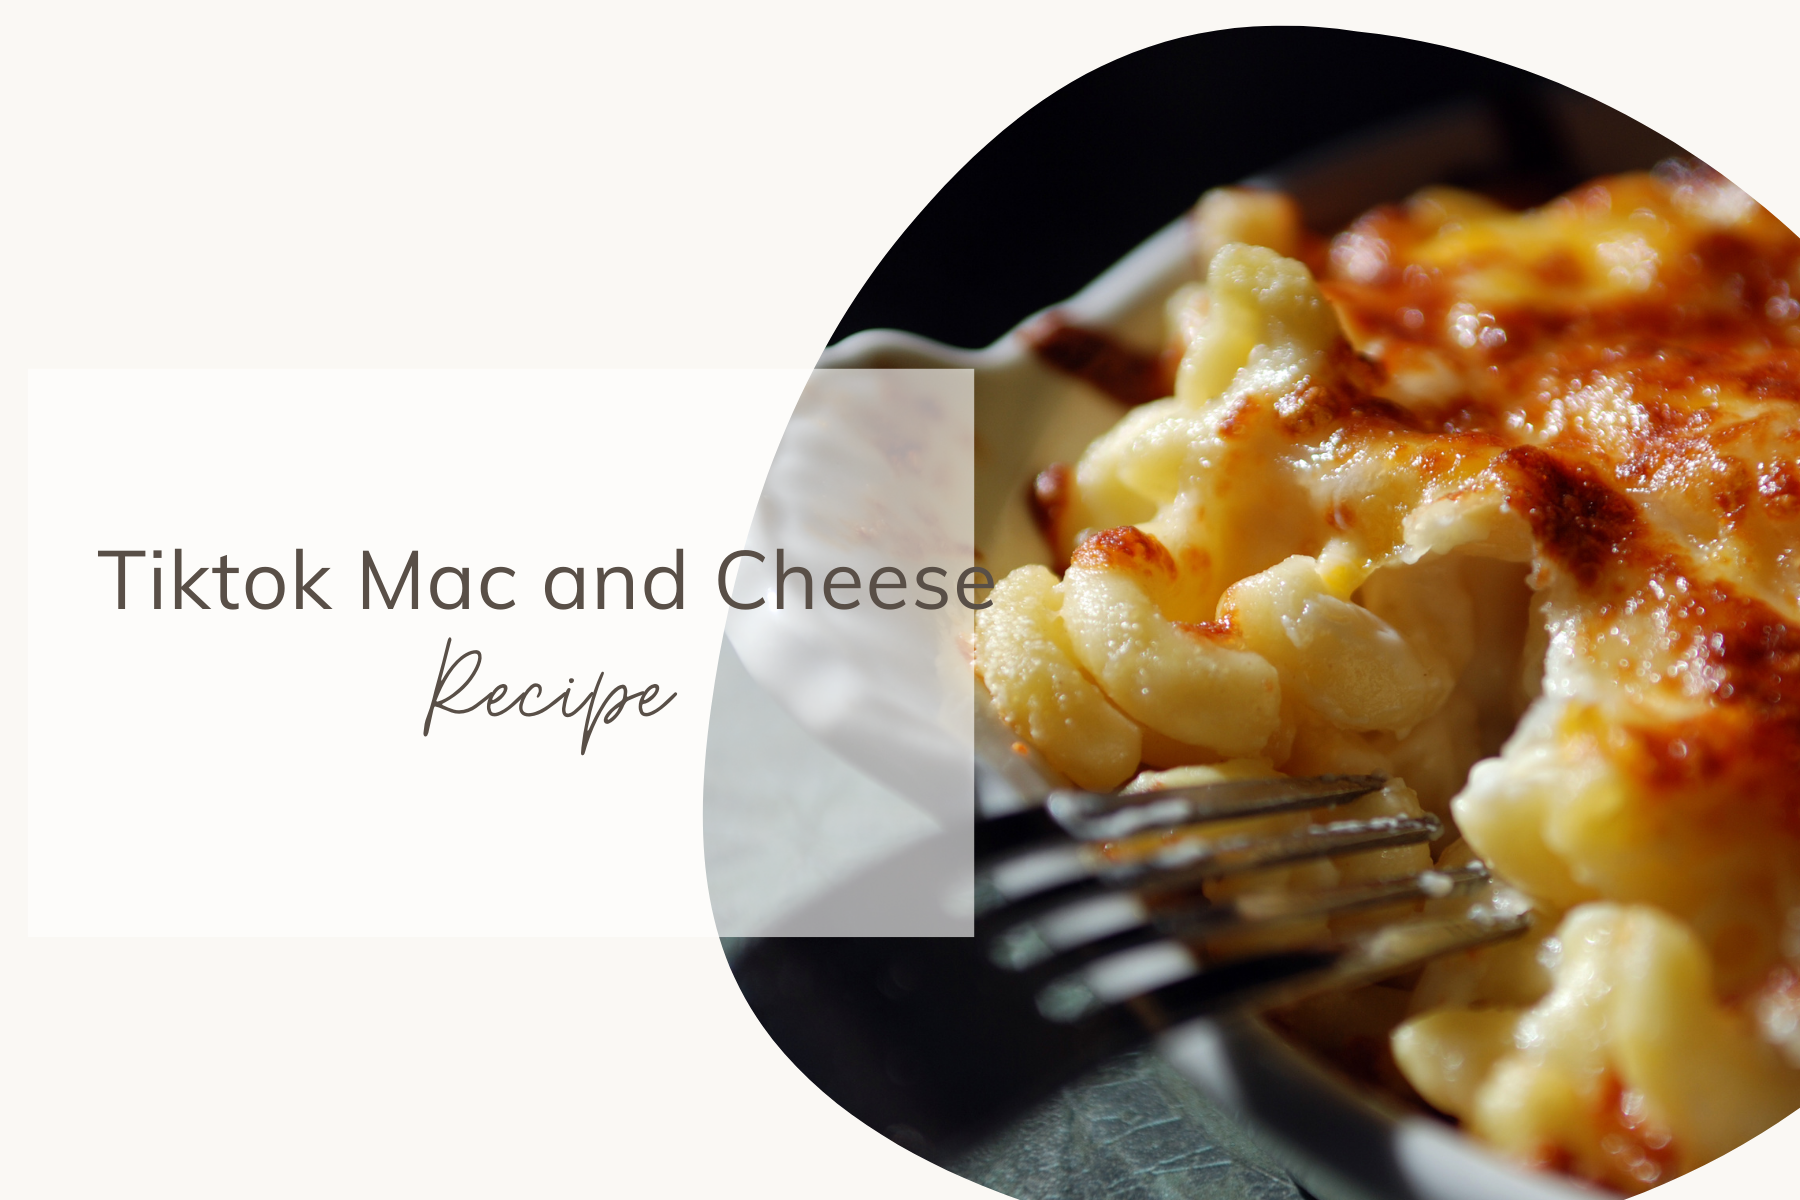 TikTok Mac and Cheese Recipe